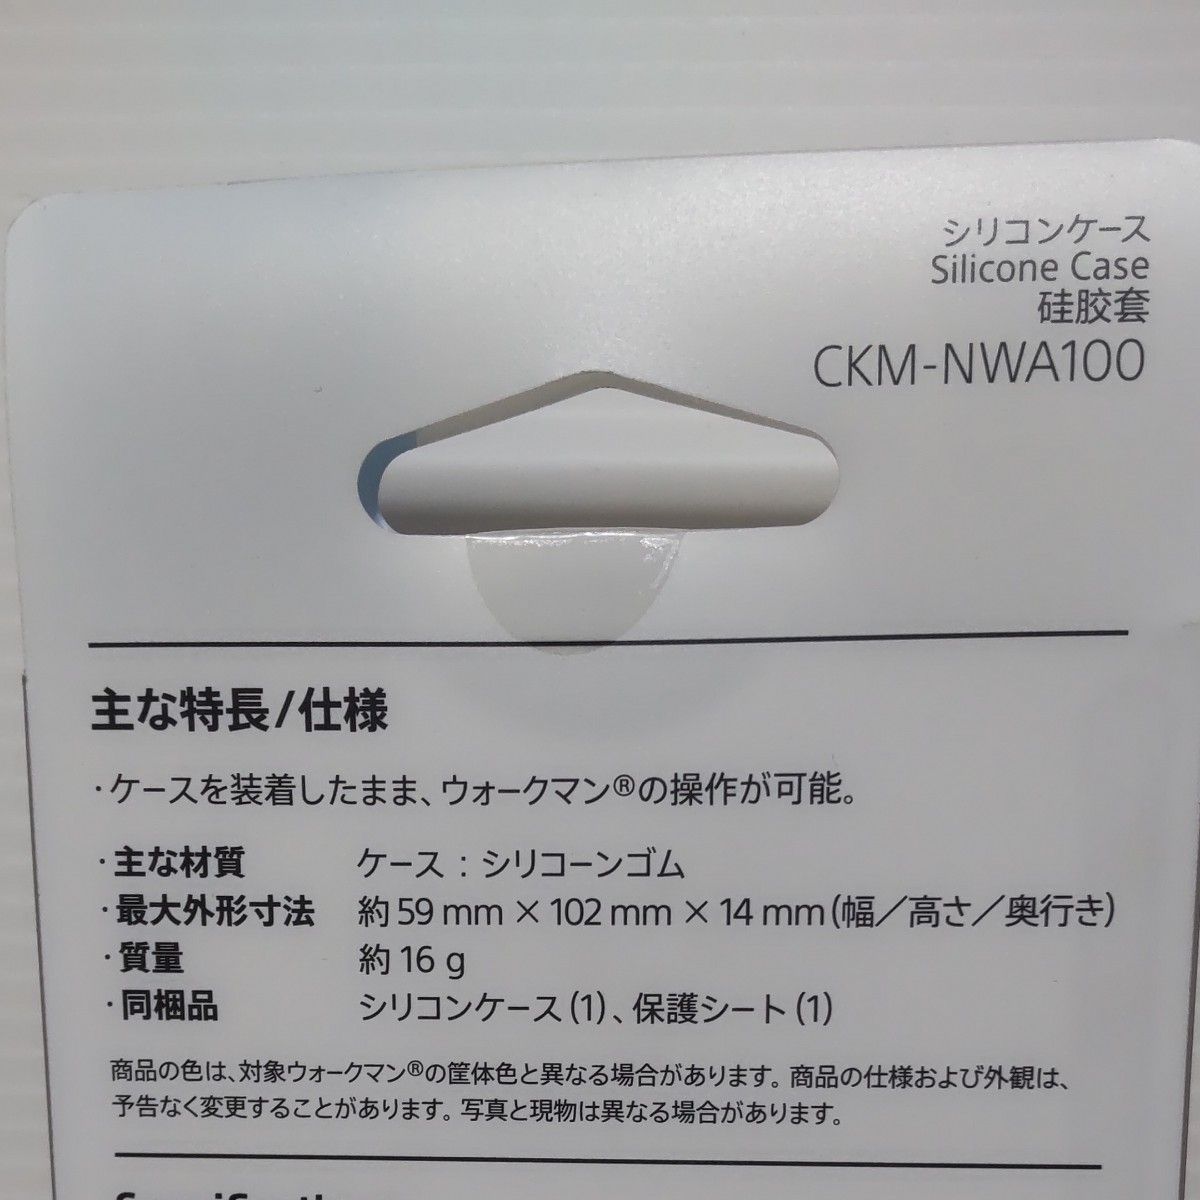 ソニー ウォークマン純正アクセサリー NW-A100シリーズ専用 シリコンケース オレンジ CKM-NWA100 D